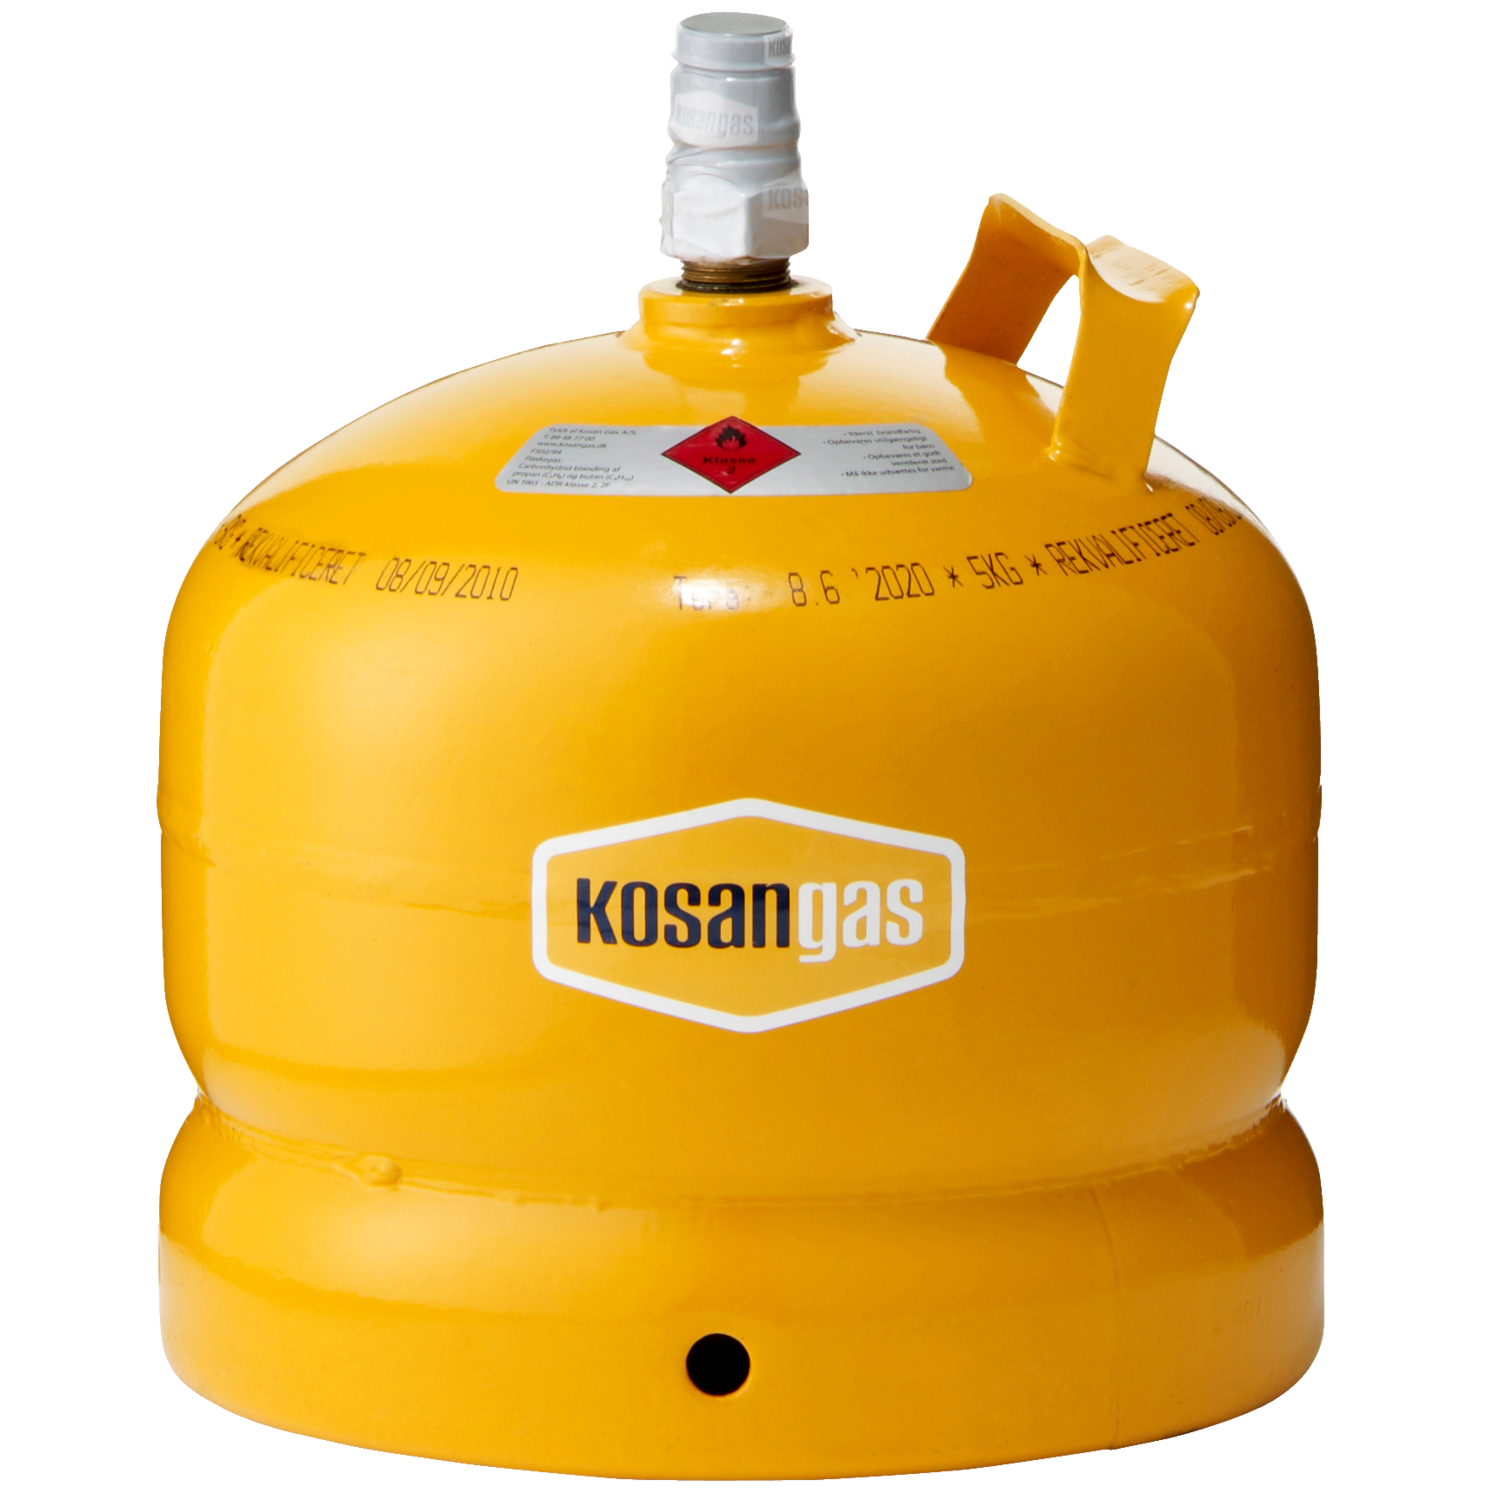 Rytmisk bekræfte portugisisk Kosan gas | Find gasflasker til grill og camping - Davidsen